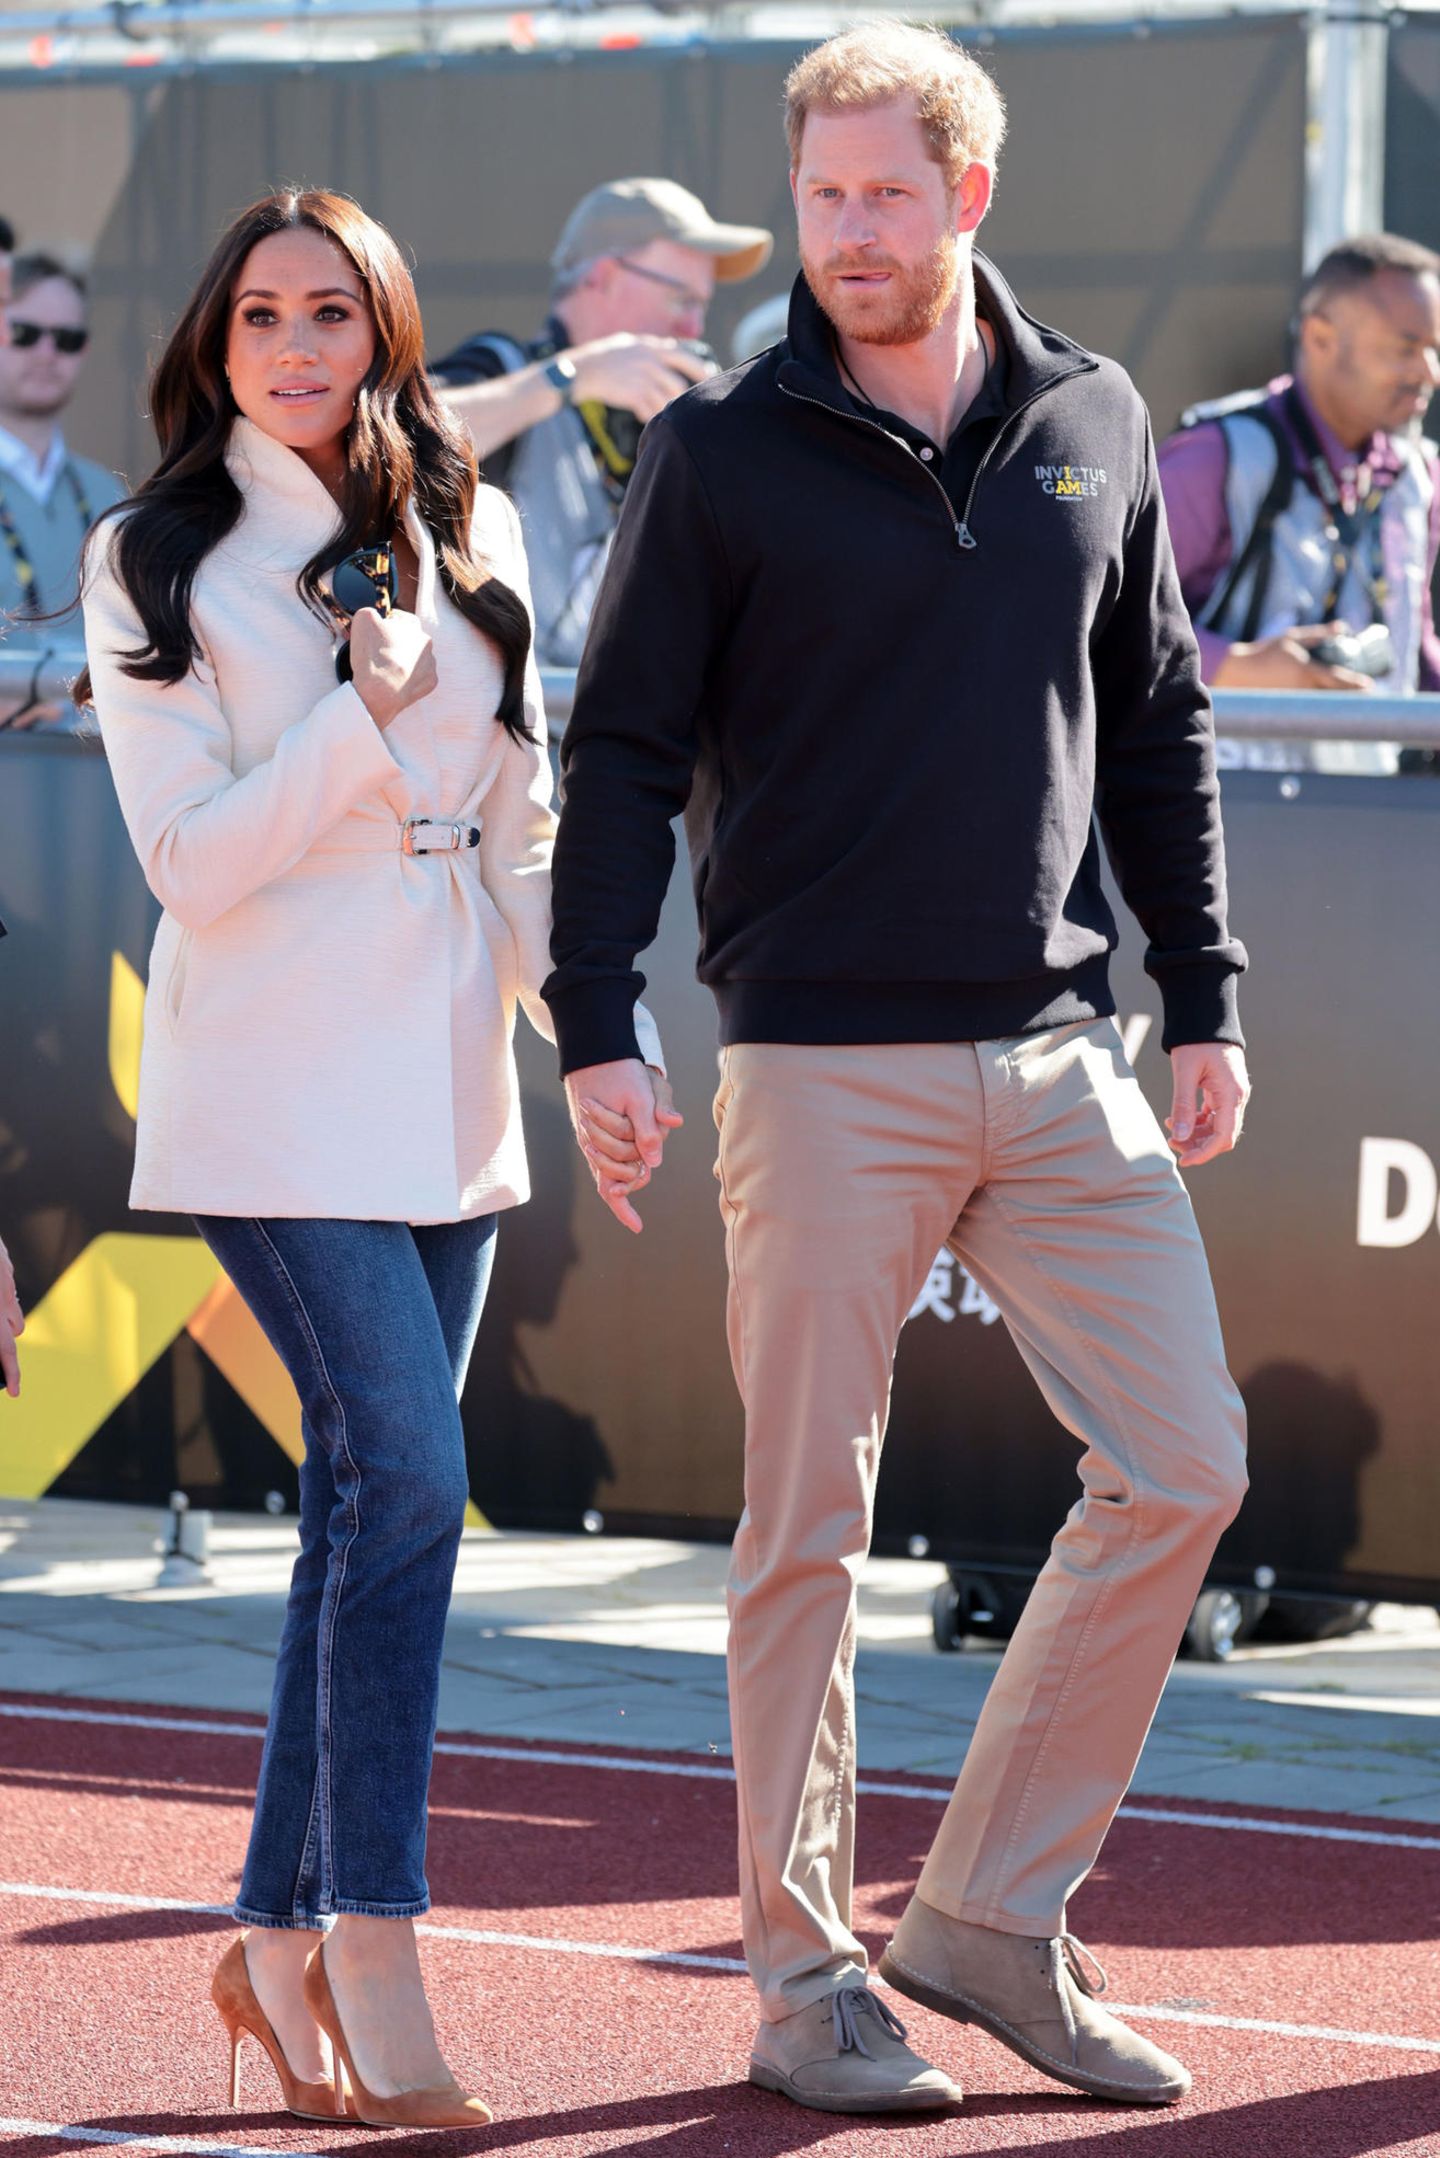 Es ist der erste Tag nach der offiziellen Eröffnung der Sportveranstaltung, die Prinz Harry ins Leben gerufen hat. Hand in Hand gehts für das Paar zum nächsten Termin.